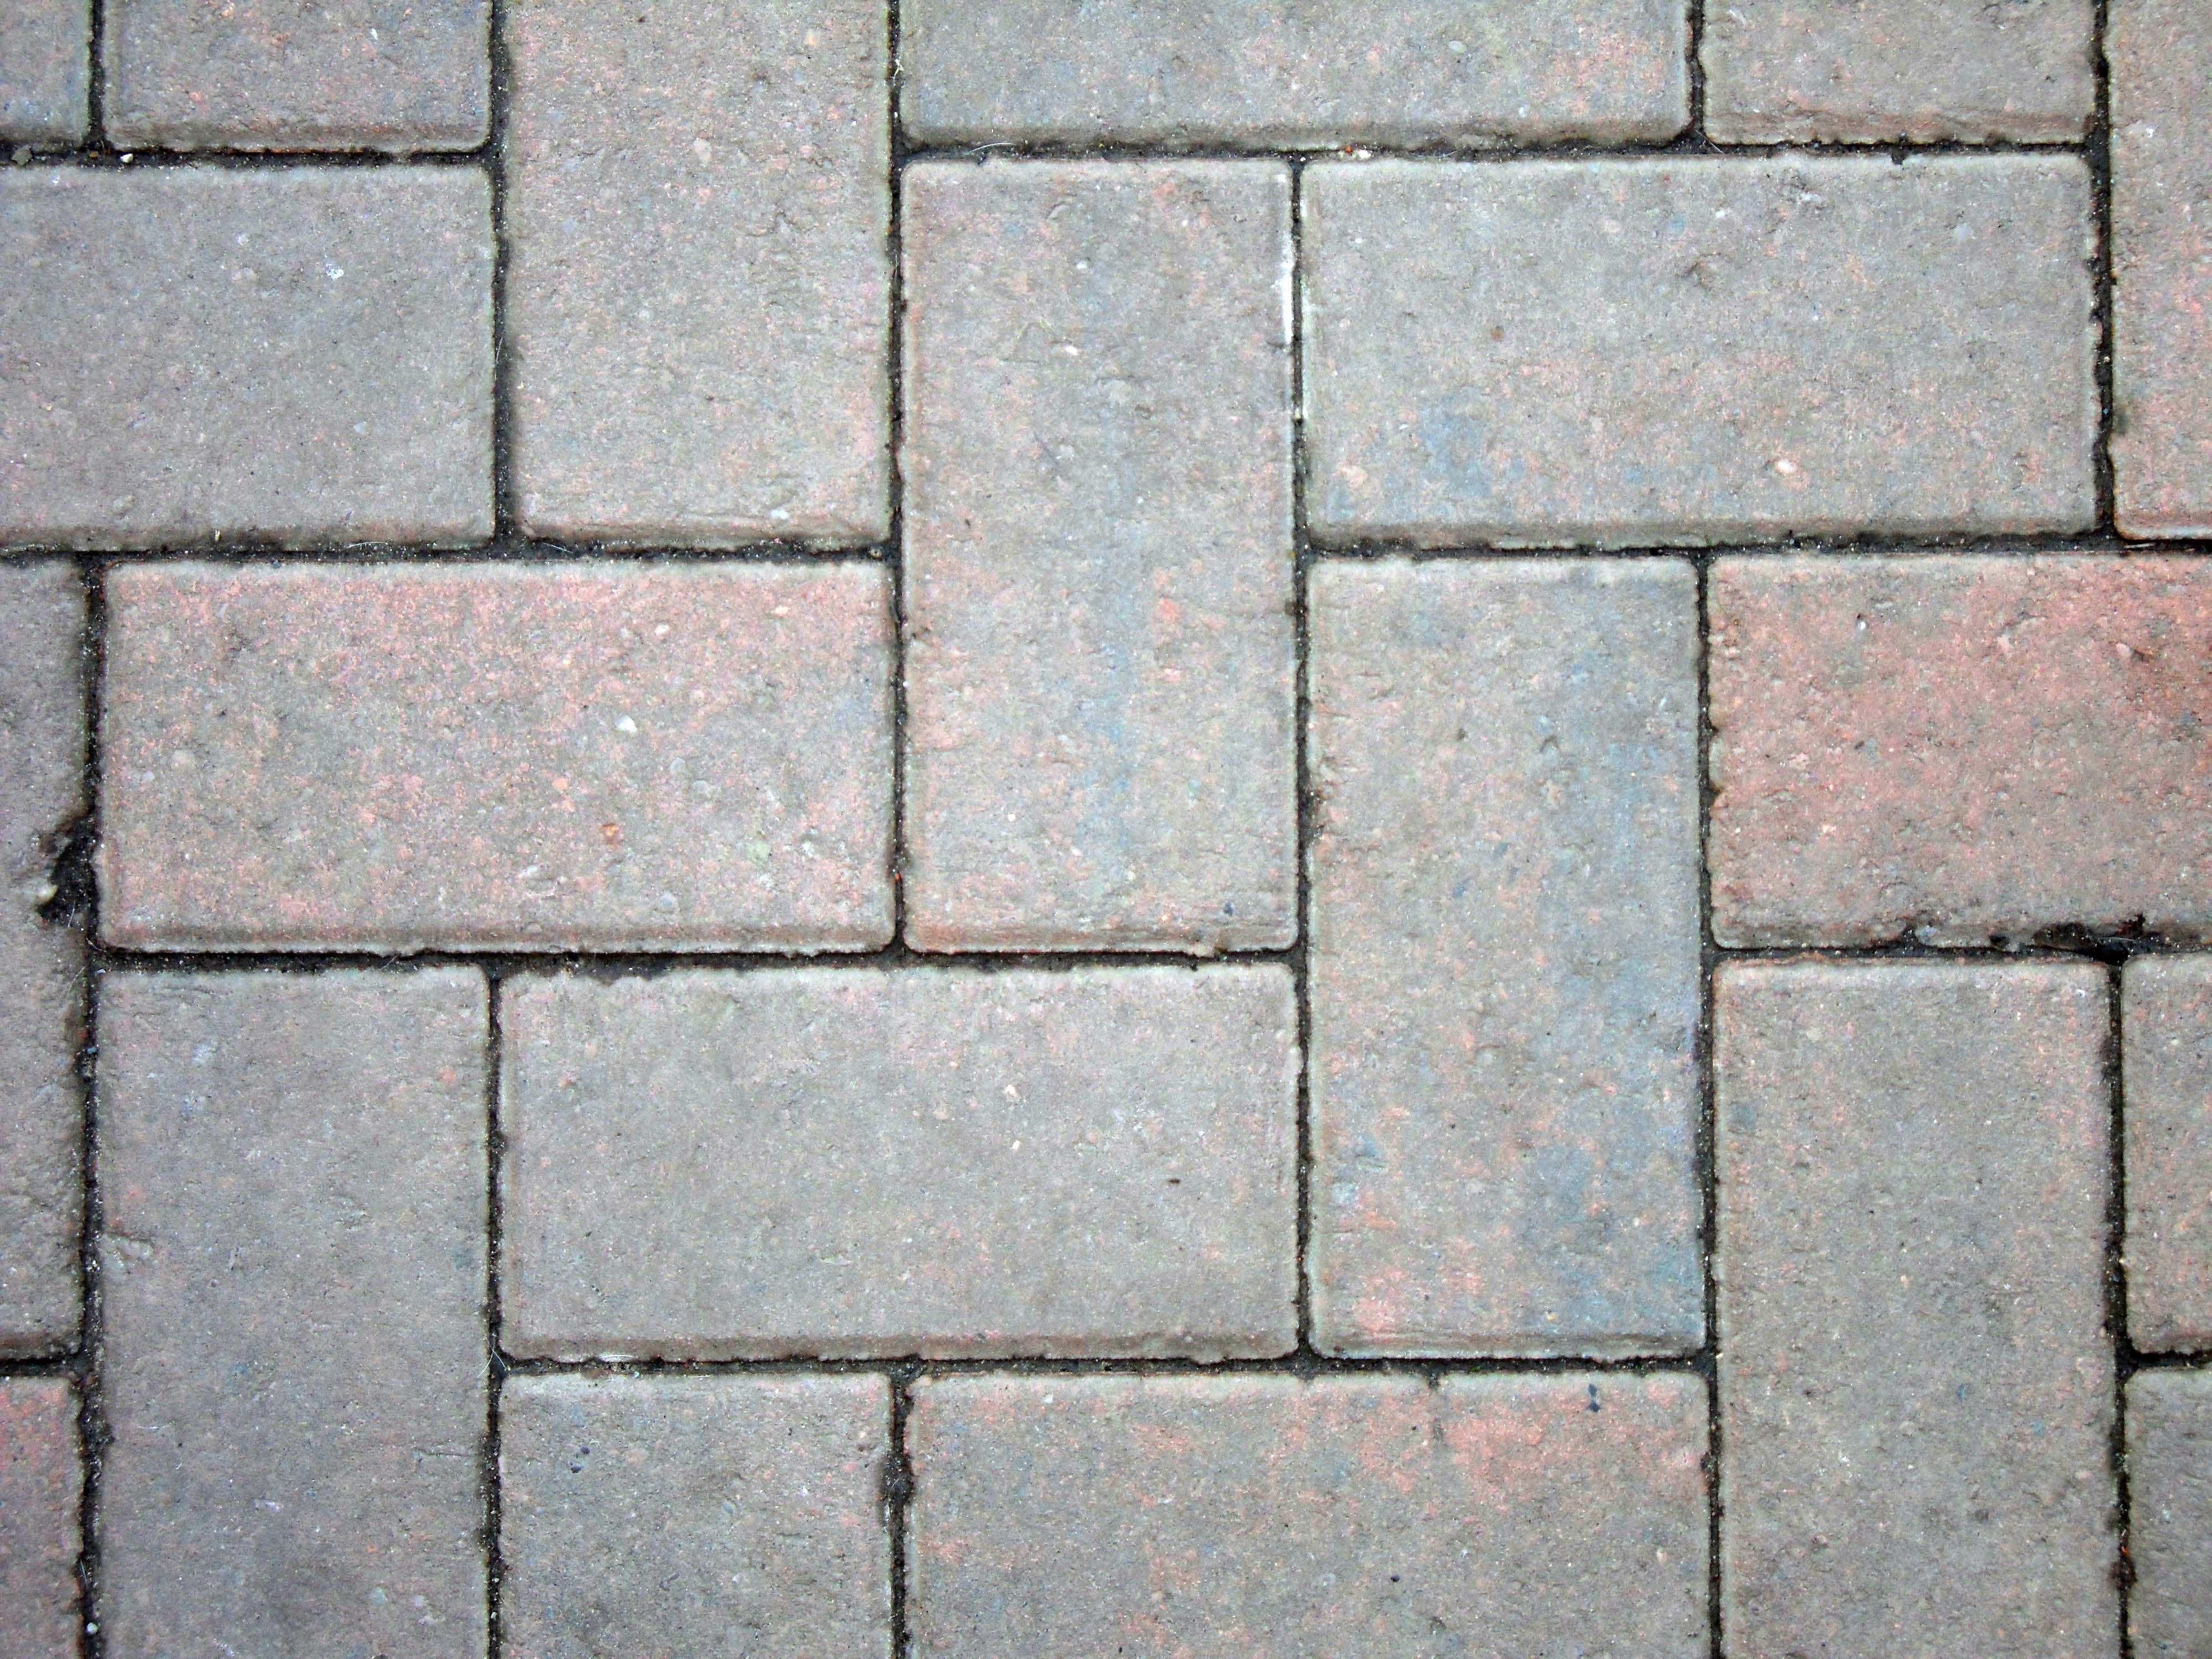 Red Block Paving Bricks - Free Stock Photos